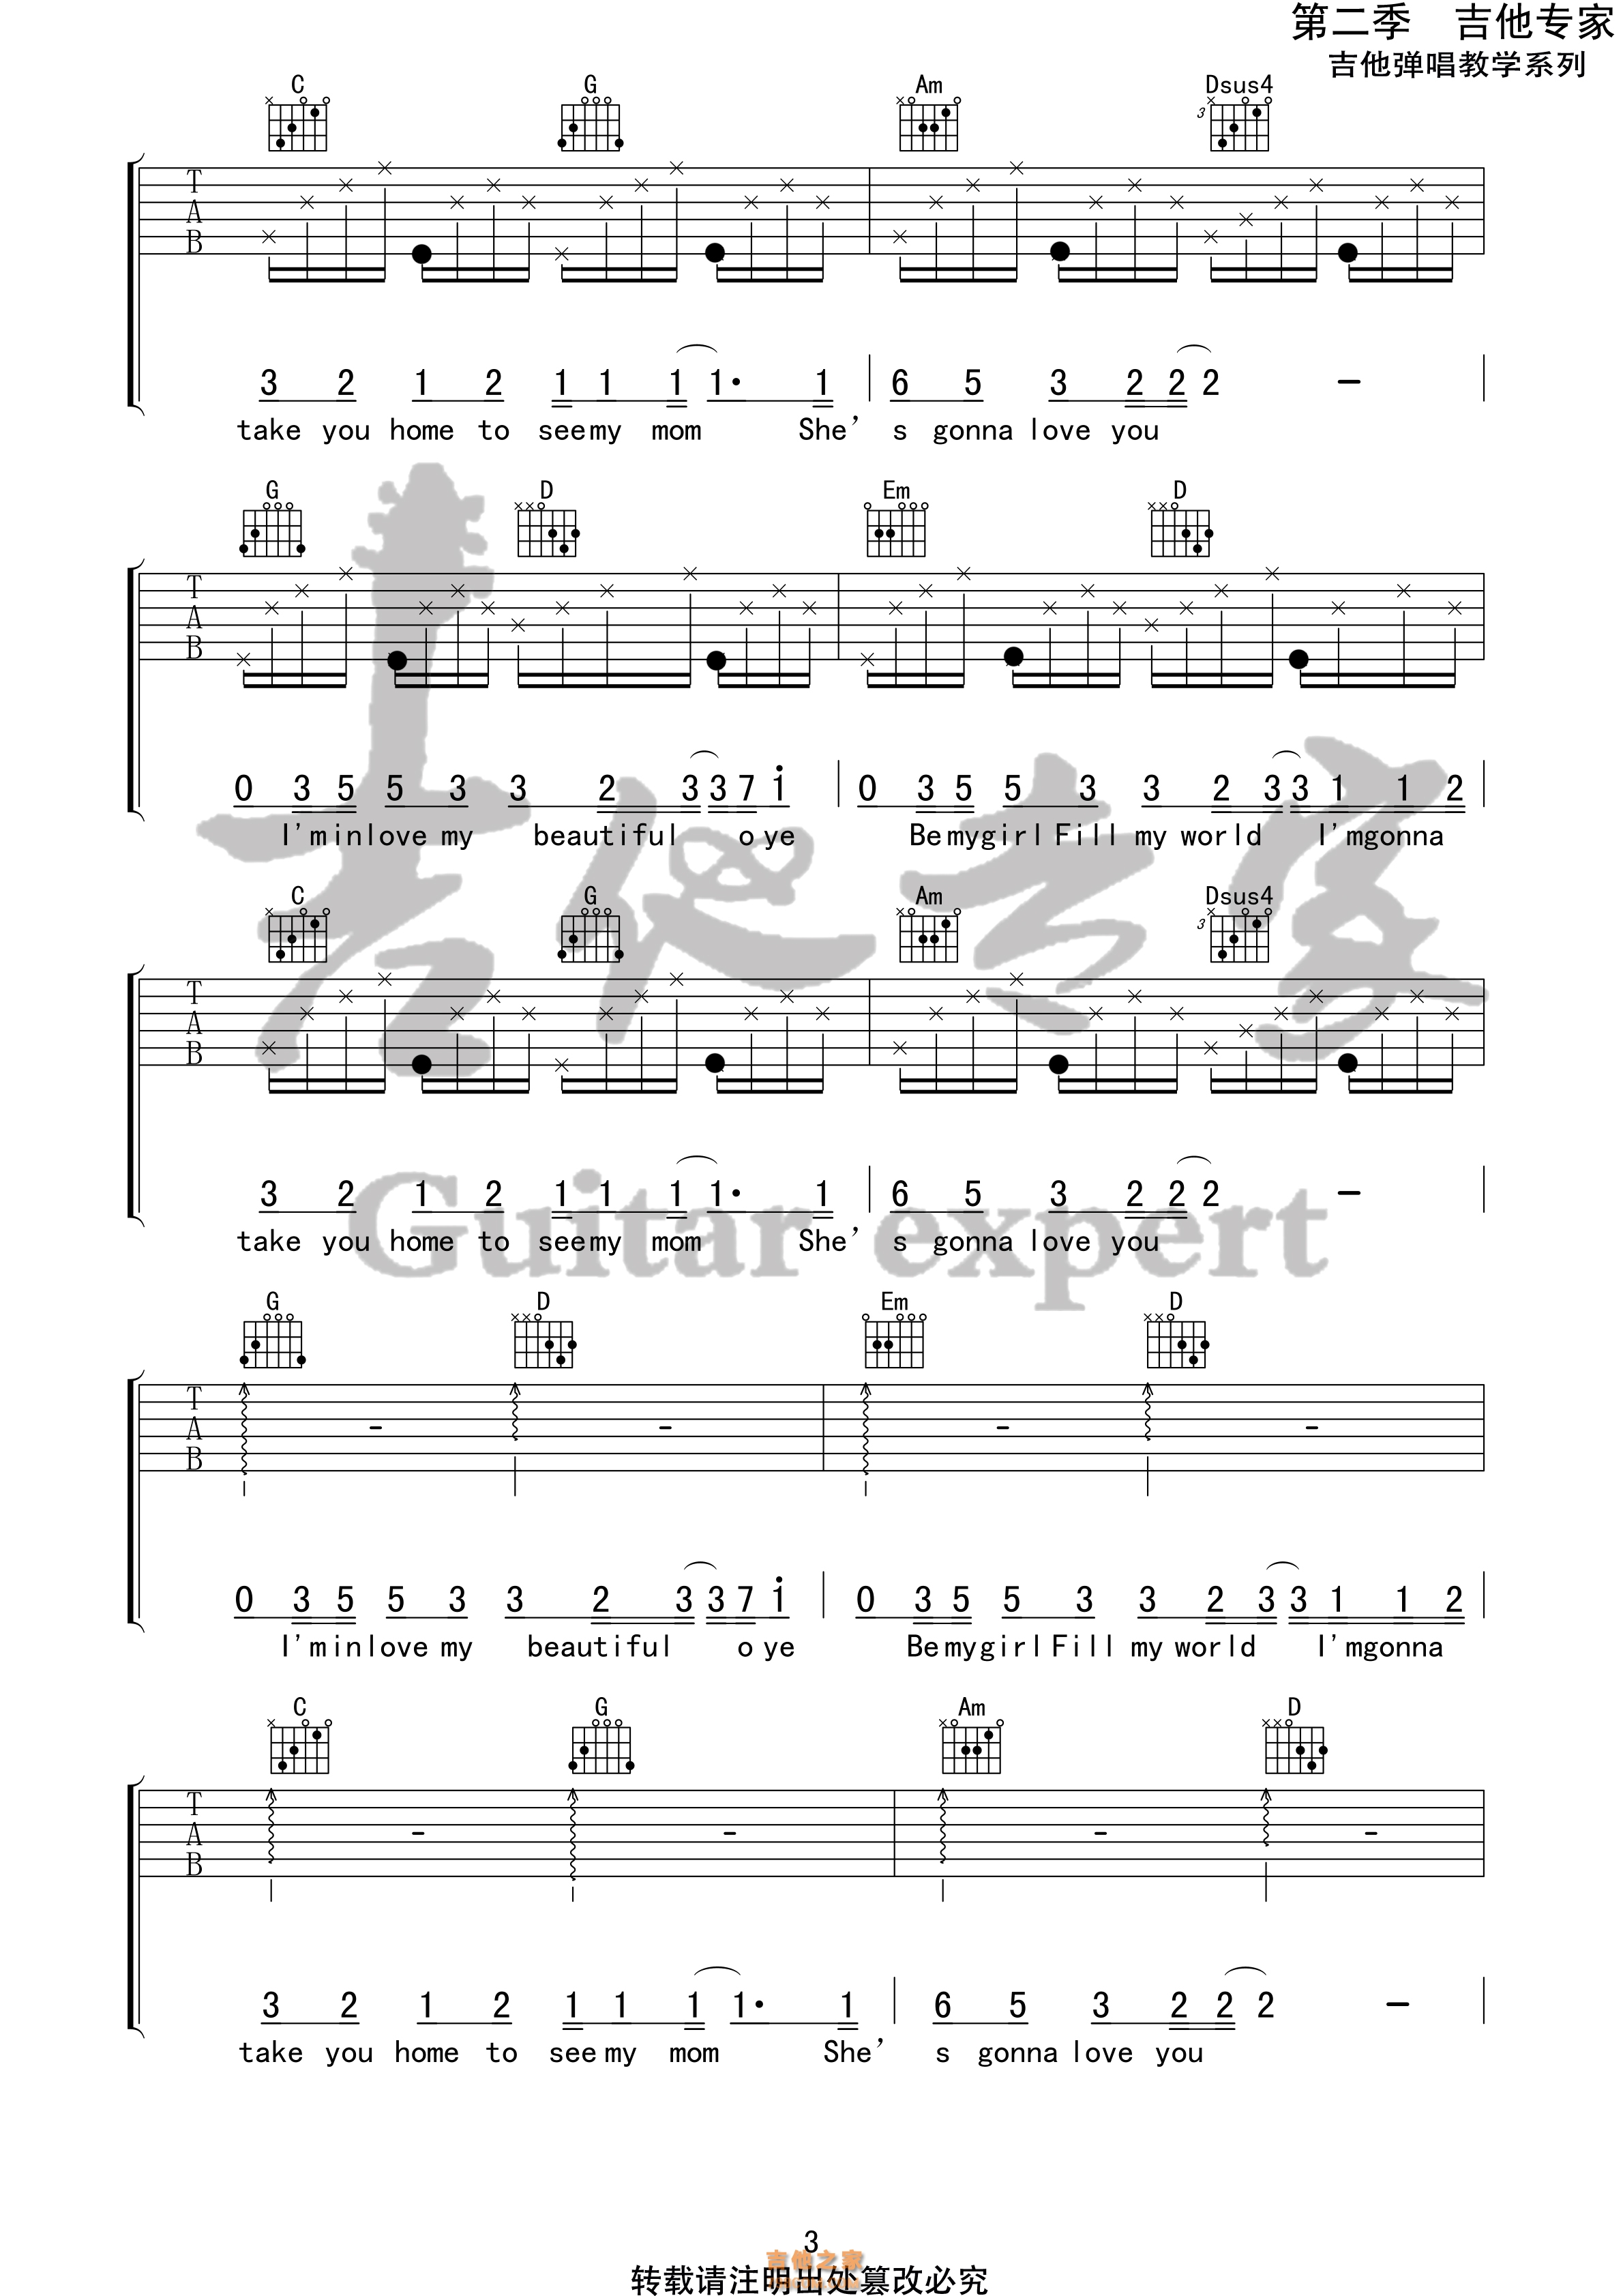 皮卡丘之歌-《精靈寶可夢XYZ》片尾曲-鋼琴譜檔(五線譜、雙手簡譜、數位譜、Midi、PDF)免費下載